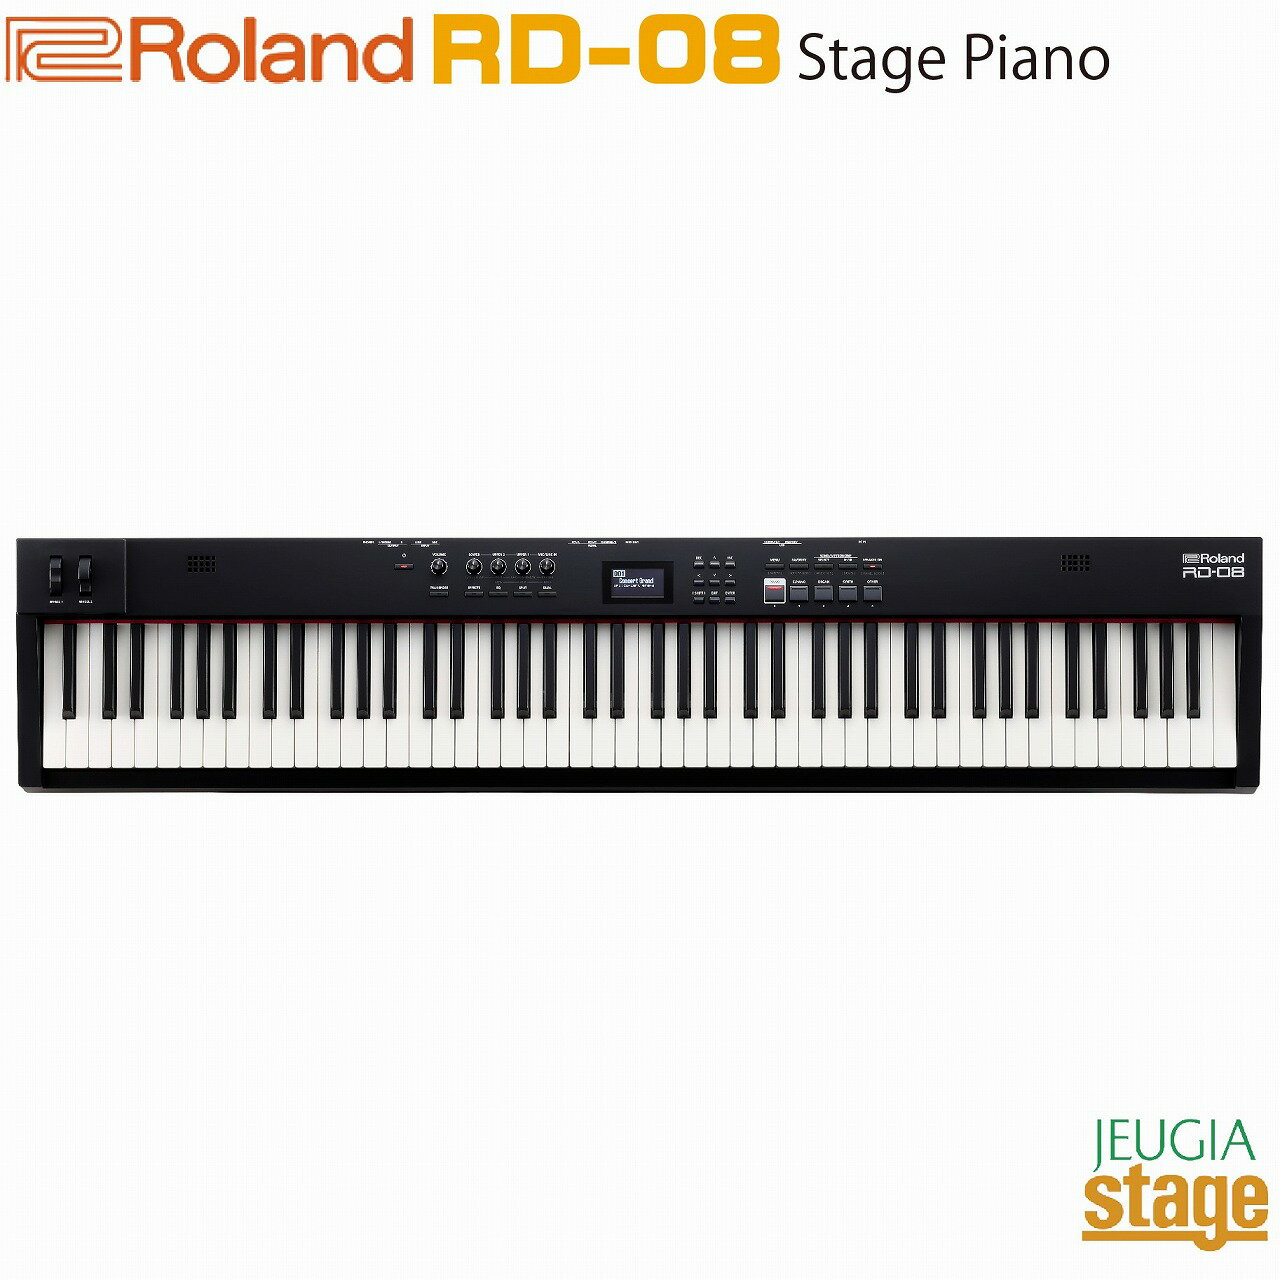 Roland RD-08 RDに不可欠な要素を凝縮 RD-08は、Rolandの定番ステージピアノRDのサウンドと演奏性を備えつつ、優れた可搬性と必要な機能を厳選して搭載。これまでで最も手頃な価格のRDは、プロフェッショナルの現場で妥協のないサウンドとプレイアビリティを兼ね備え、直感的なインターフェースにより瞬時の対応が求められる場面にも迅速に対応します。また、アップグレード可能なデザインを採用することで、ニーズの変化に応じてサウンドや機能を追加することが可能です。 万能ステージピアノ RD-08は、ミュージシャンにとって理想的なステージピアノです。軽量・コンパクトで移動が簡単になり、ハードな使用にも長年に渡り使い続けることができる頑丈な構造を実現しています。豊かなサウンドを奏でる内蔵のステレオ・スピーカーは、自宅での練習やリハーサルでの音出し、小さな会場ならば外部スピーカーを使用することなく演奏可能です。 【Standard Features】 ■合理的なデザインと拡張可能な機能を備えたRDステージピアノ ■直感的なインターフェースにより快適なナビゲーションを実現 ■軽量かつコンパクトな設計で、簡単に持ち運びやセットアップが可能 ■88鍵のウェイトアクションPHA-4スタンダード鍵盤とアイボリーフィールによるワールドクラスのプレイアビリティを実現 ■RD-2000とRD-88で高い評価を得ているSuperNATURALアコースティック・ピアノとエレクトリック・ピアノを搭載 ■オルガン、シンセサイザー、ストリングス、ブラスなどを含む3,000以上のサウンドを備えたZEN-Core音源を搭載 ■すぐに演奏を始められる内蔵ステレオ・スピーカー・システムを搭載 ■サウンドと機能の拡張ができるRD-08 UpgradeをRoland Cloudから入手可能 定評あるRDパフォーマンス 趣味で活動するミュージシャンからツアー・アーティストまで、多くの人に愛用されているRoland RDピアノは、1986年以来、ステージ・ミュージシャンの主要な選択肢となっています。RD-08は、RDのコア機能を備えつつ、より手頃な価格でRDのパフォーマンスを体感でき、必要に応じていつでも機能を拡張できるアップグレードをご用意しています。 プレミアム・ピアノをはじめとした高品位サウンド RolandのSuperNATURALテクノロジーを備えたRD-08は、ダイナミックで個性的なアコースティック・ピアノとエレクトリック・ピアノのサウンドを搭載し、ステージやスタジオで優れた表現力を発揮します。また、オルガン、シンセサイザー、ストリングス、その他のサウンドも豊富に取り揃え、最新のフラッグシップ・シンセサイザーと同様のZEN-Core音源により、さまざまな音楽スタイルに対応します。 抜群のプレイアビリティ 40年以上にわたるRolandのピアノ開発から生まれたクラス最高峰の演奏性を実現するRD-08。PHA-4 88鍵盤は、ウェイテッド・ハンマーアクションとアイボリーフィール鍵盤を採用し、打鍵感や性能を損なうことなく楽器の重量を軽減する革新的なデザインを実現し、グランド・ピアノのような演奏を体感できます。 高い信頼性 すべてのRDピアノと同様に、RD-08の洗練されたパネルは、演奏と創造に集中できるよう設計されています。フロントパネルのボタンからサウンドの選択やトランスポーズ、その他の機能にすばやくアクセスでき、4系統の多機能ノブを使ってレイヤーやエフェクト、EQなどをコントロール可能。微調整した結果はすべてシーンメモリーに保存でき、演奏中にタッチするだけで呼び出すことが可能です。 仕様 ■鍵盤：88鍵（PHA-4スタンダード鍵盤：エスケープメント付き、象牙調） ■音源：ZEN-Core、SuperNATURAL Piano、SuperNATURAL E.Piano ■パート数：3パート ■音色：シーン100、トーン3,000以上 ■エフェクト：ゾーン・マルチエフェクト（MFX）：3系統、90種類、ゾーン・EQ：3系統、ゾーン・トーン・カラー：3系統、シーン・マルチエフェクト（IFX）：90種類、シンパセティック・レゾナンス、コーラス／ディレイ：8種類、リバーブ：6種類、マスター・コンプレッサー、マスター・EQ、インプット・リバーブ、インプット・EQ ■その他機能：フェイバリット、ソング・プレーヤー、メトロノーム ■コントローラー：アサイナブル・ホイール×2、コントロール・ノブ×4、マスター・ボリューム・ノブ、ダンパー・ペダル、アサイナブル・ペダル×2 ■定格出力：6W×2 ■スピーカー：フルレンジ（12cm×2）、ツイーター（2cm×2） ■ディスプレイ：グラフィックLCD（128×64ドット） ■外部メモリー：USBメモリー ■接続端子：PHONES端子（ステレオ標準タイプ）、OUTPUT端子（L/MONO、R）（標準タイプ）、MIC INPUT端子（標準タイプ）、LINE INPUT端子（ステレオ・ミニ・タイプ）、PEDAL（DAMPER、FC1、FC2）端子 TRS標準タイプ、MIDI OUT 端子、USB FOR UPDATE端子：USB A（マスストレージ）、USB COMPUTER端子：USB B（クラス・コンプライアントによるMIDI通信）、DC IN端子 ■電源DC12V：ACアダプター ■消費電流：1,500mA ■付属品：取扱説明書、『安全上のご注意』チラシ、ACアダプター、電源コード、保証書、ペダル・スイッチ ■外形寸法：幅 (W)1,284 mm奥行 (D)258 mm高さ (H)159 mm ■質量：13.5 kg（ACアダプター除く） ※商品画像はサンプルです。 ★掲載の商品は店頭や他のECサイトでも並行して販売しております。在庫情報の更新には最大限の努力をしておりますが、ご注文が完了しましても売り切れでご用意できない場合がございます。 　また、お取り寄せ商品の場合、生産完了などの理由でご用意できない場合がございます。 　その際はご注文をキャンセルさせていただきますので、予めご了承くださいませ。 ★お届け先が北海道や沖縄、その他離島の場合、「送料無料」と表記の商品であっても別途中継料や送料を頂戴いたします。その際は改めてご連絡を差し上げますのでご了承ください。　